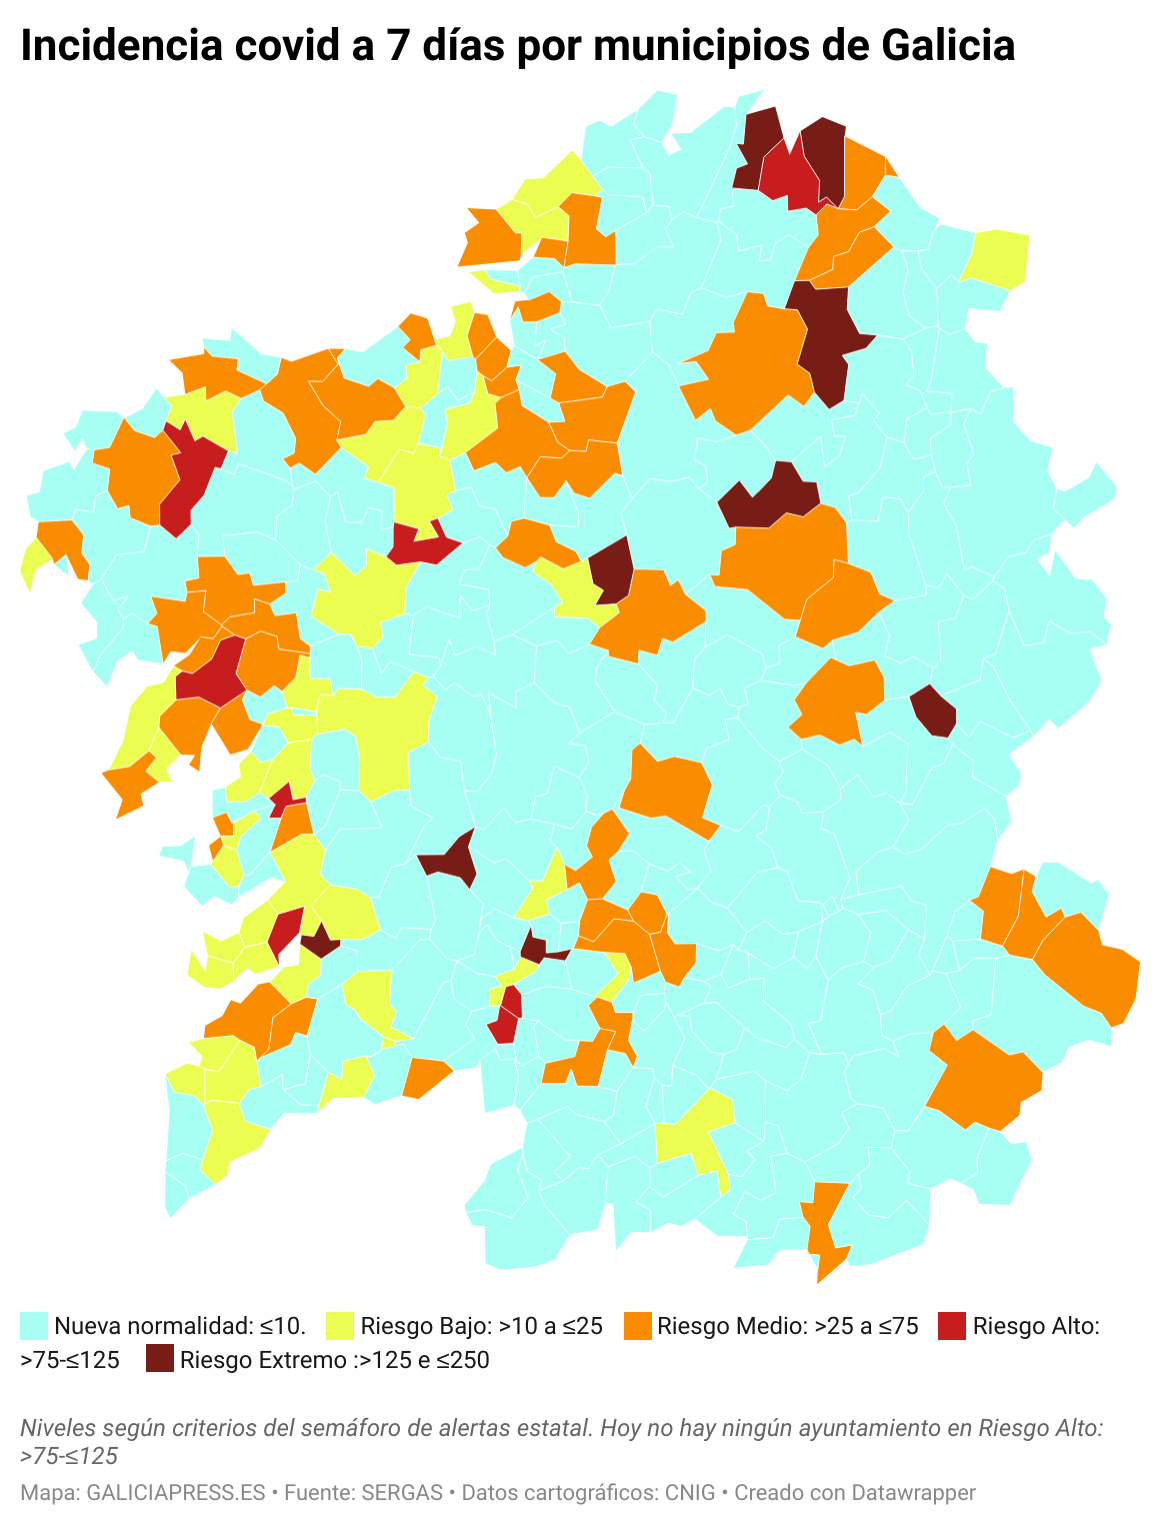 5s8Dh incidencia covid a 7 d as por municipios de galicia  (2)